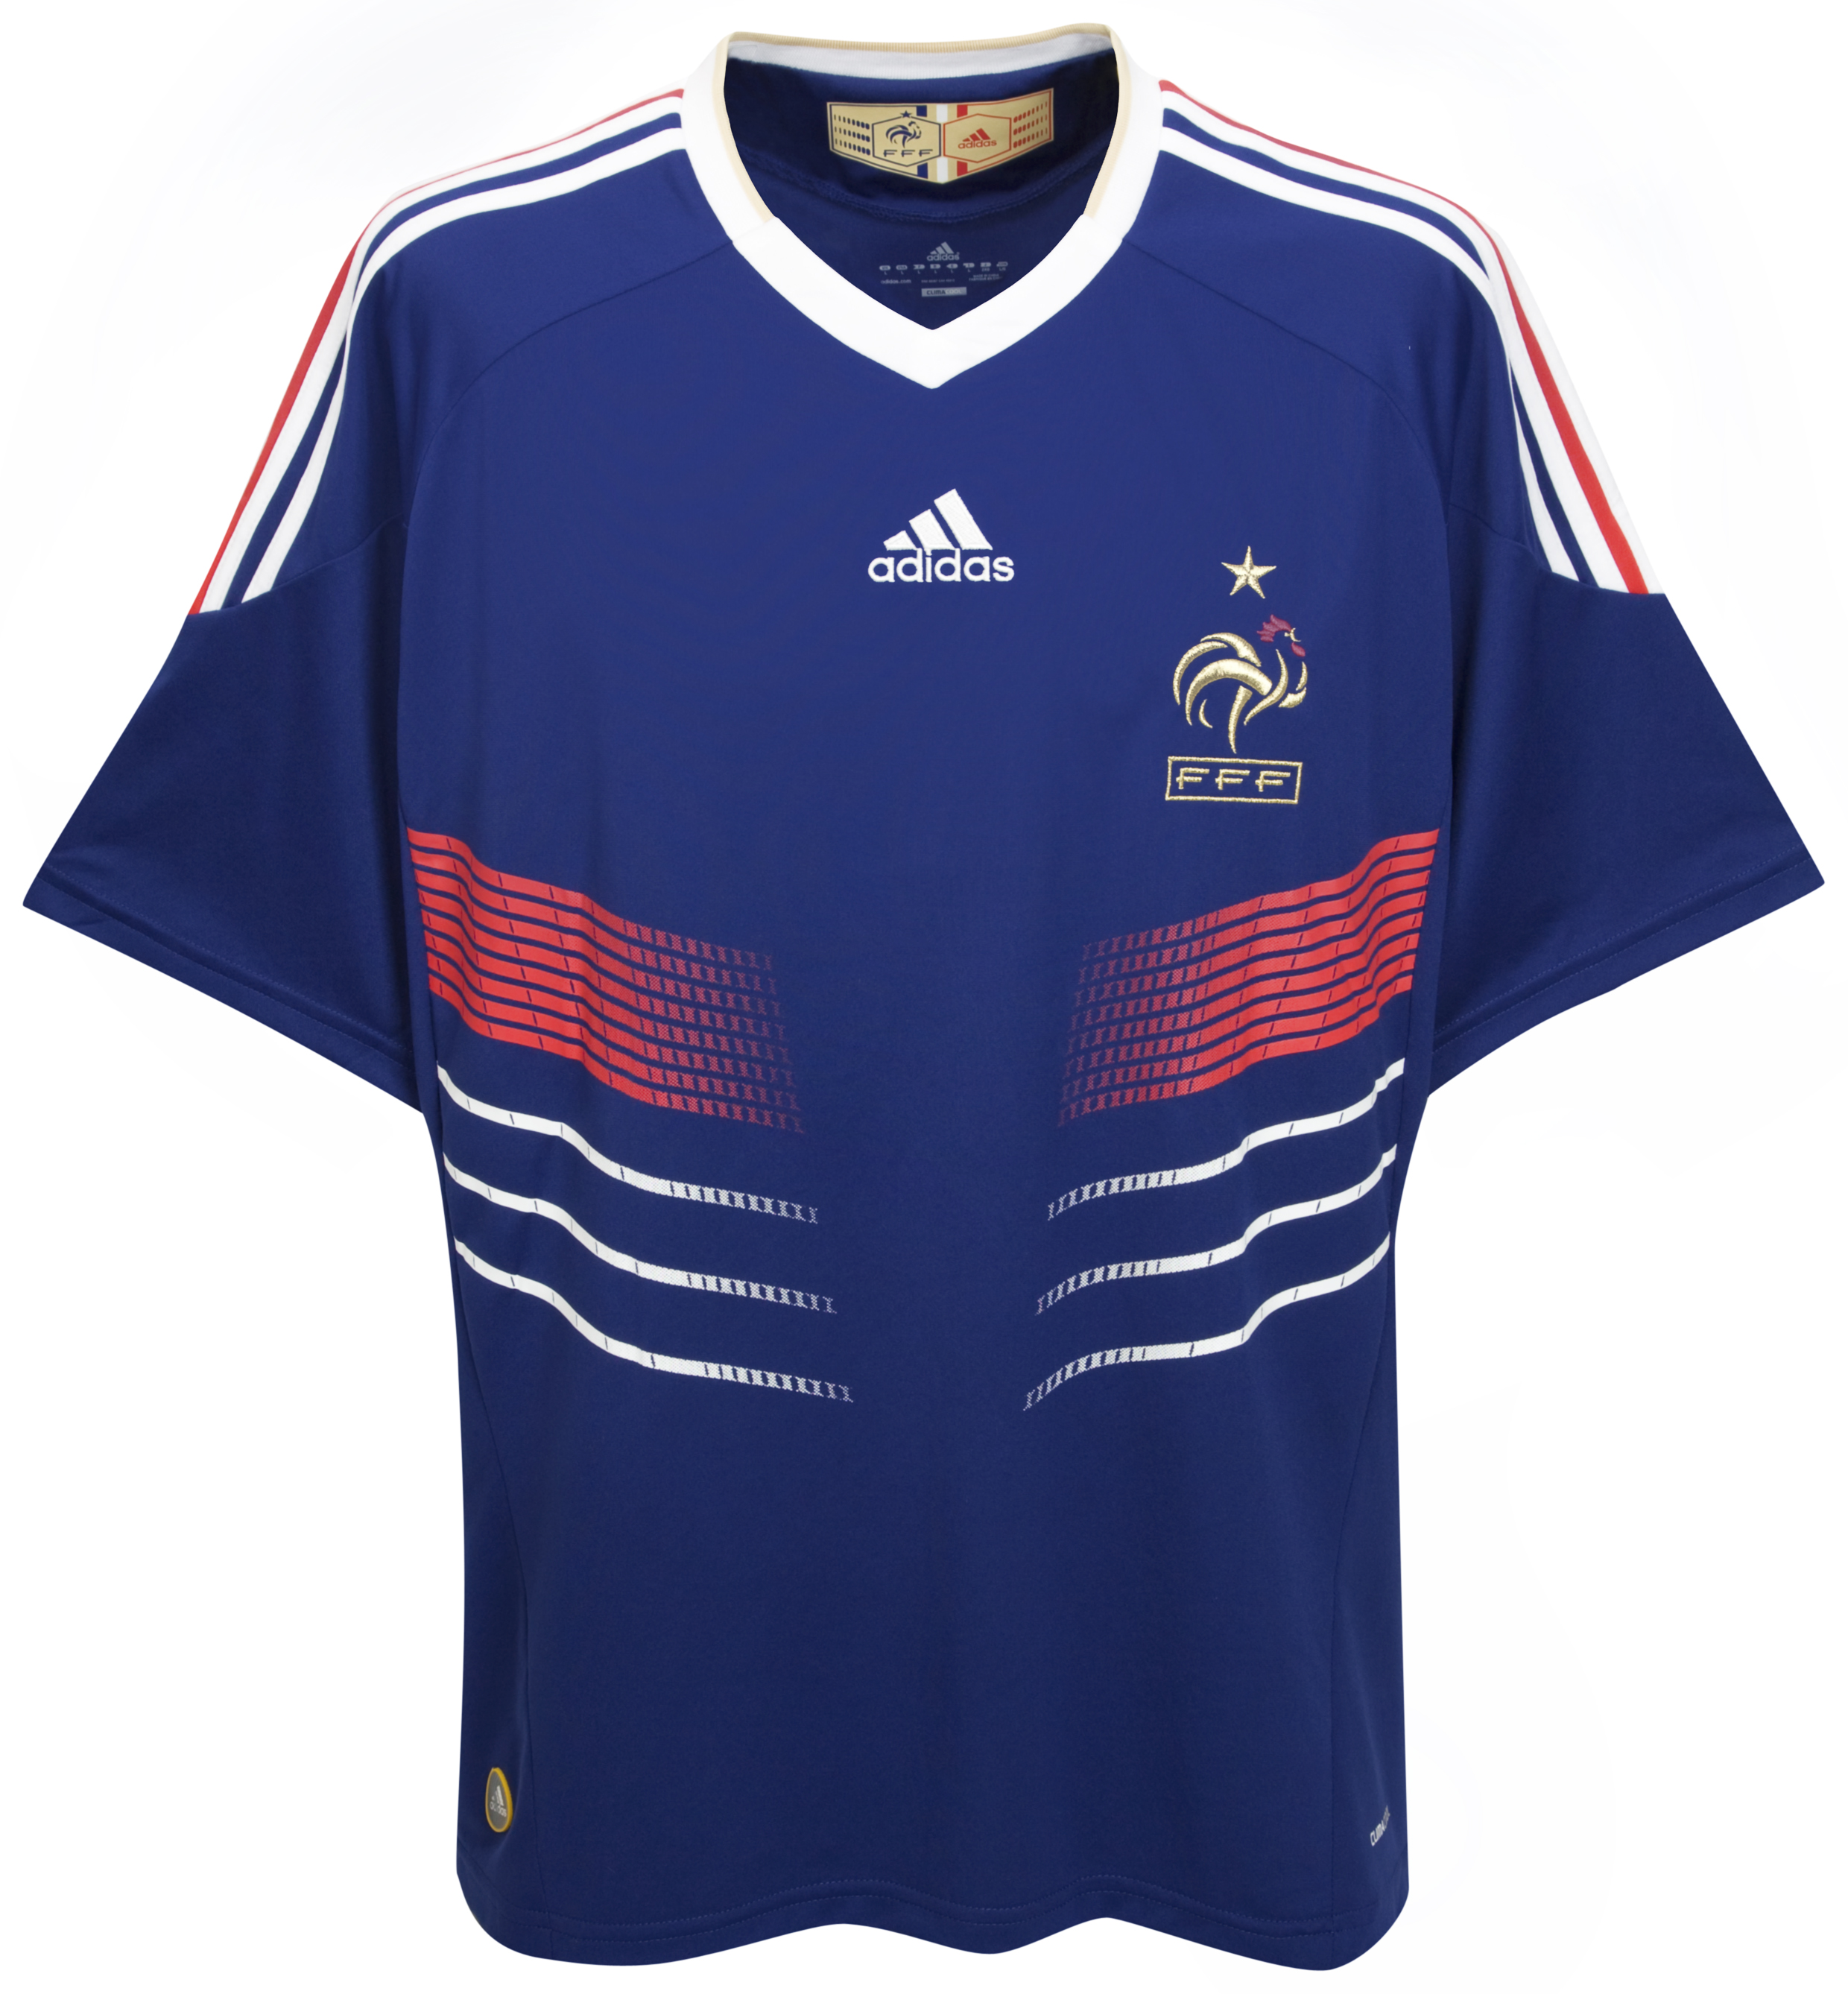 ملابس المنتخبات لكأس العالم (2010 Cfc-63740